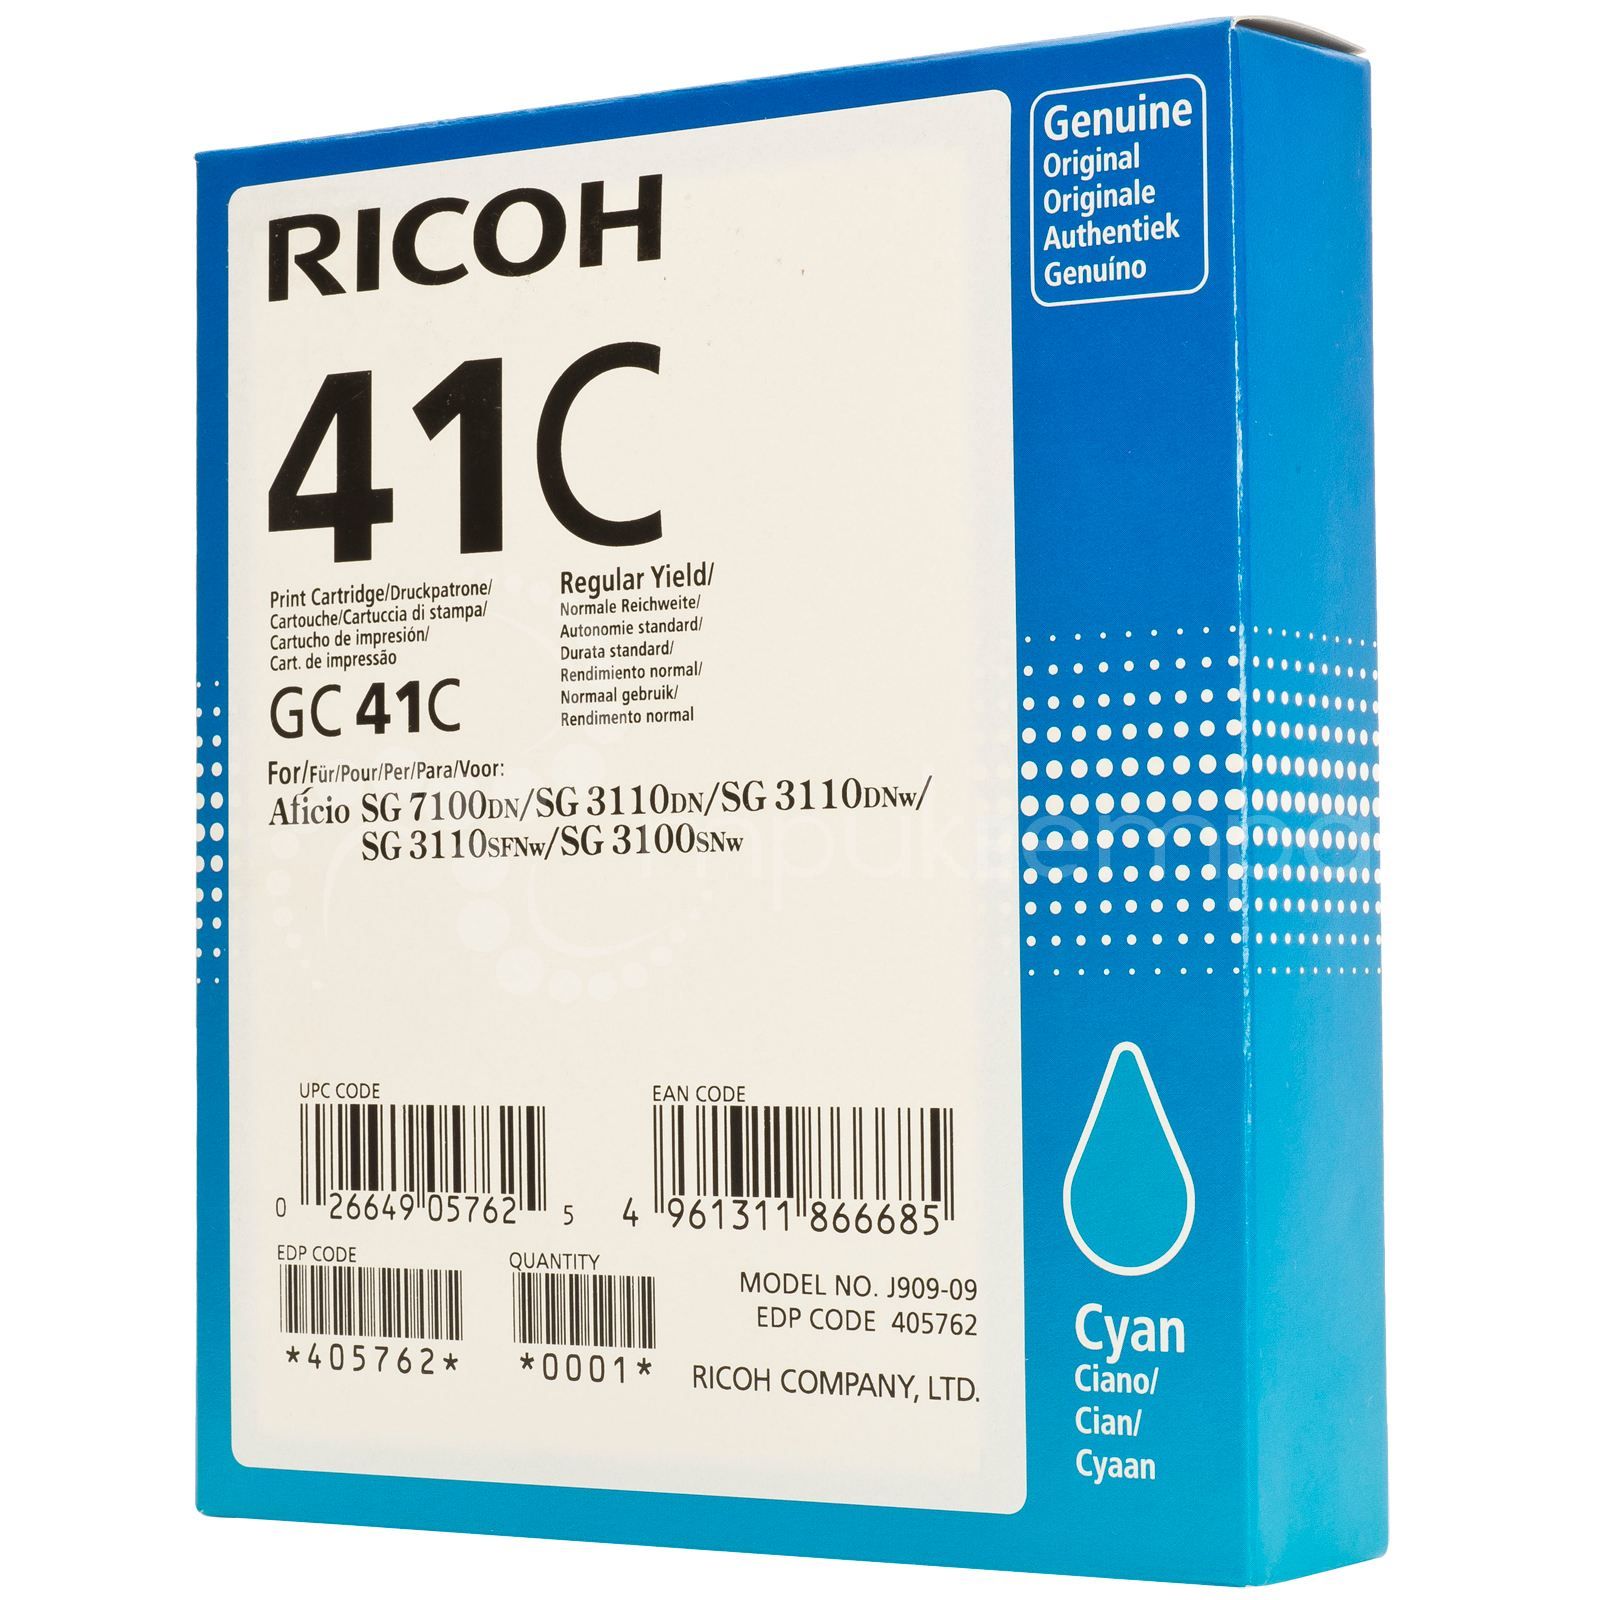  Ricoh Aficio 3110DN/ 3110DNw/ 3100SNw/3110SFNw GC 41C 